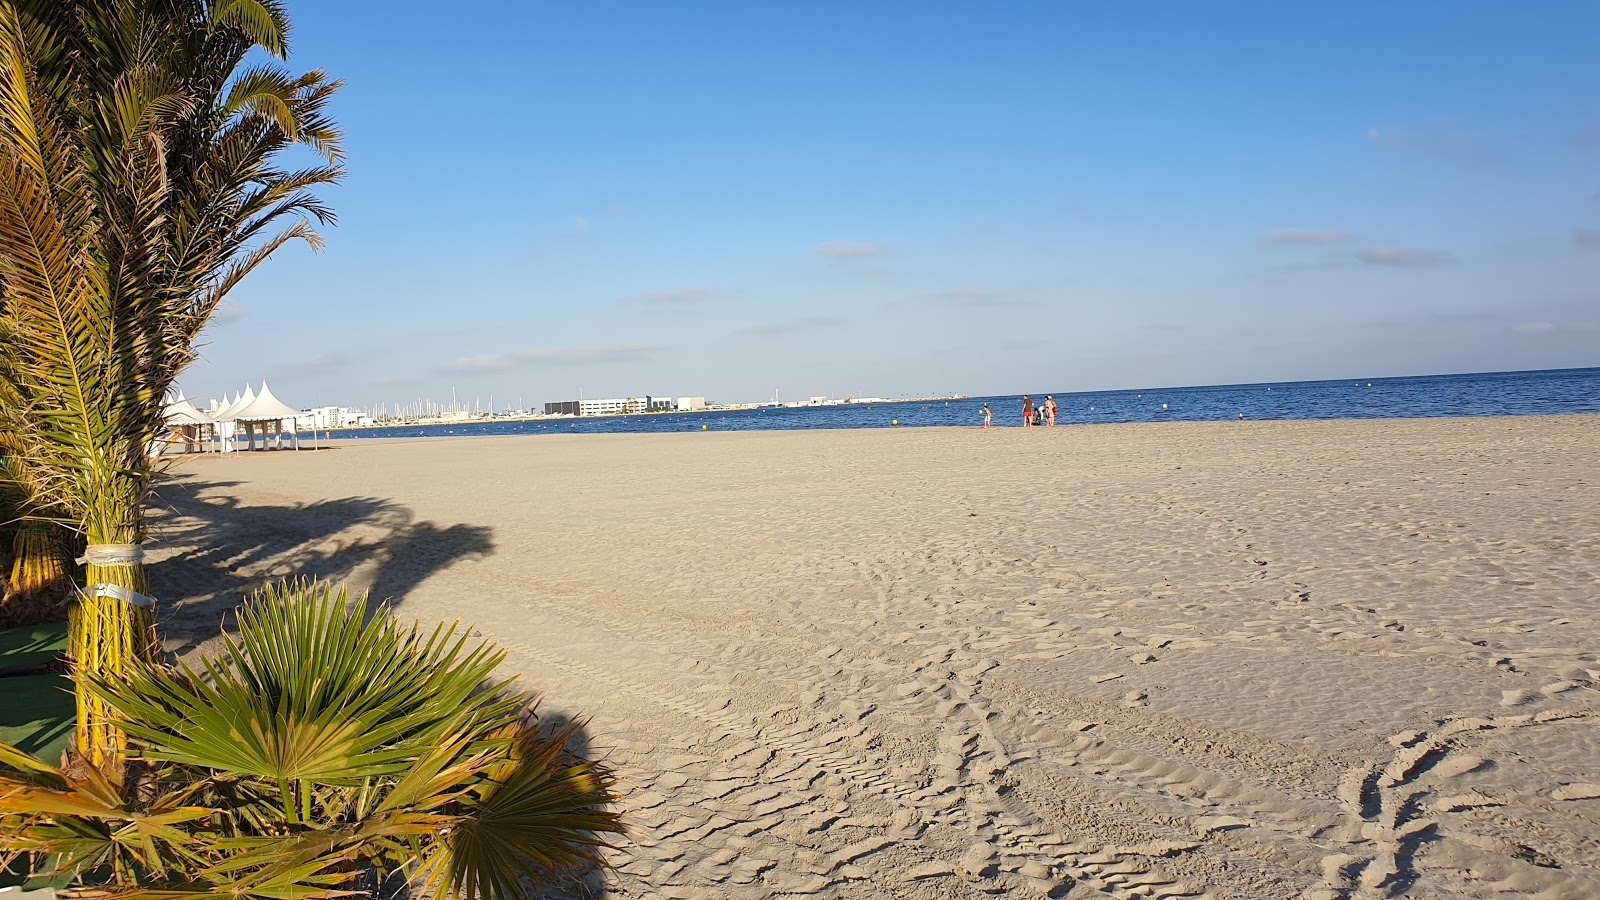 Beach Santa Pola'in fotoğrafı i̇nce kahverengi kum yüzey ile